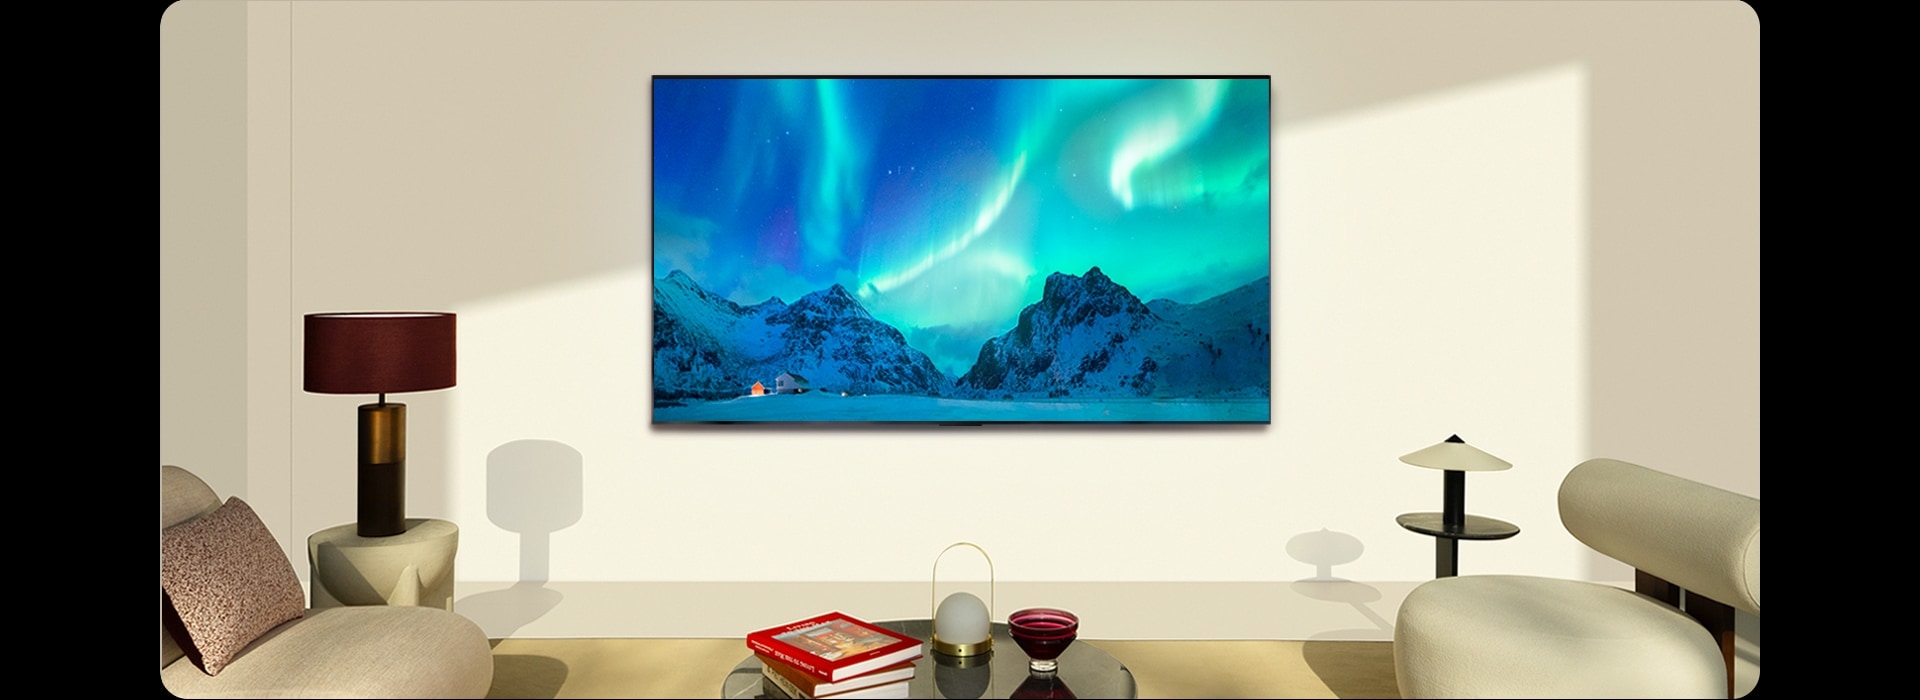 El televisor LG OLED y una barra de sonido LG en un espacio moderno durante el día. La imagen de la aurora boreal se muestra con los niveles de brillo ideales.